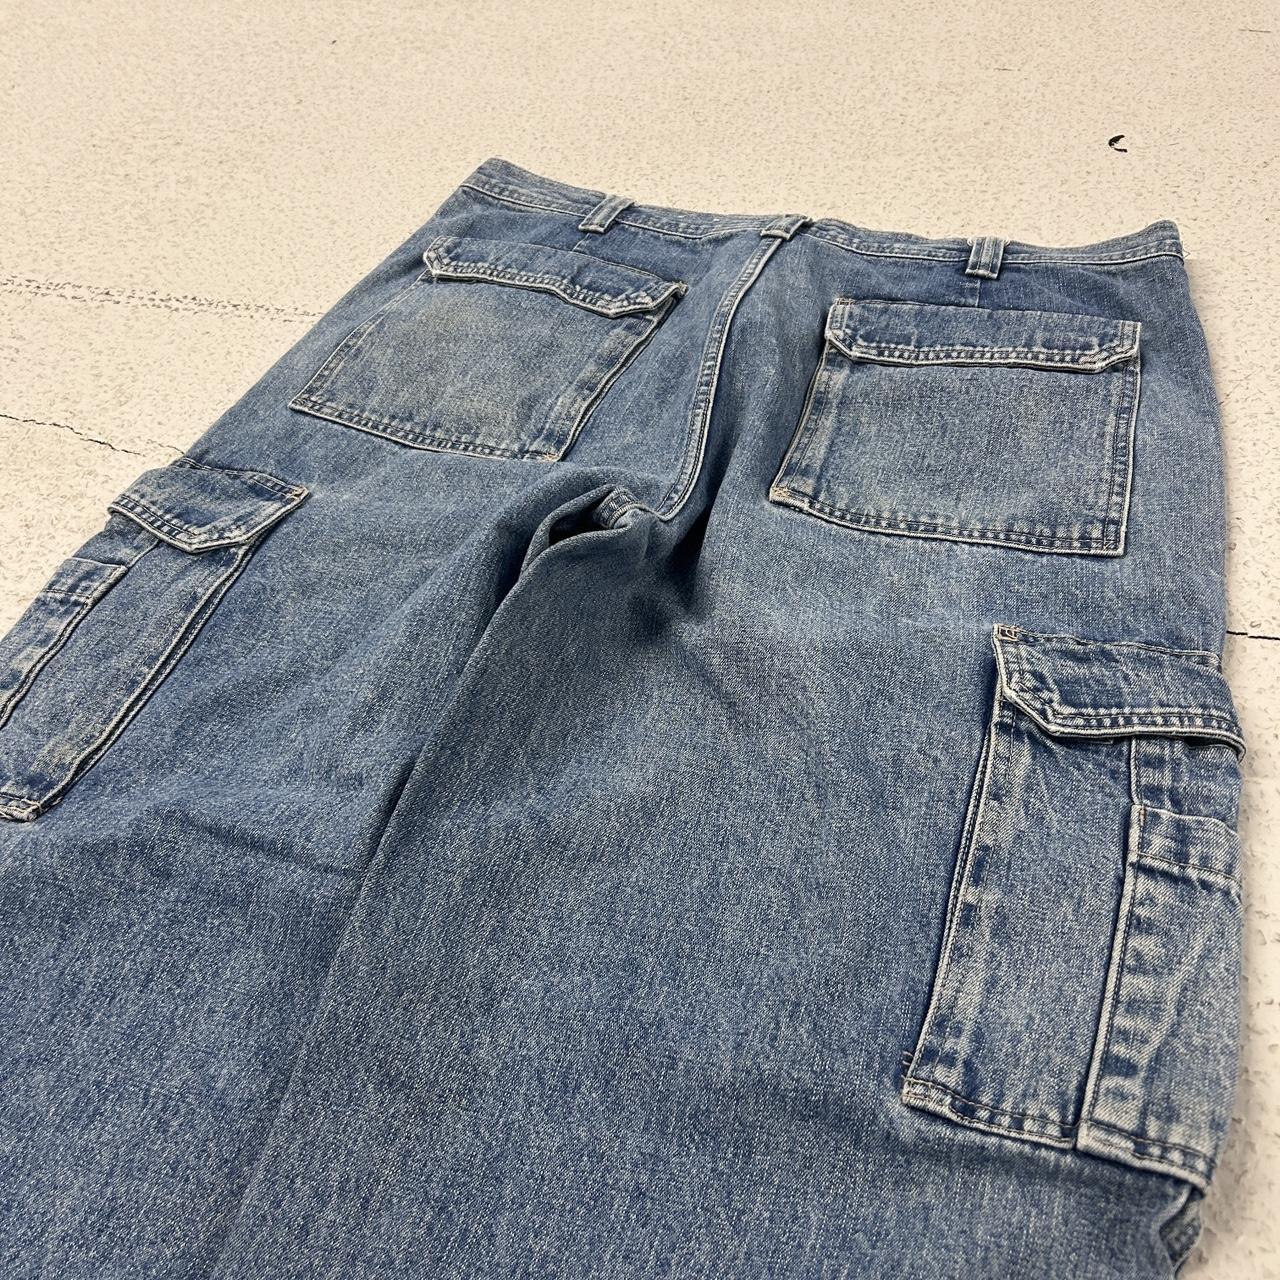 Vintage baggy cargo jeans size 38 blue skater... - Depop